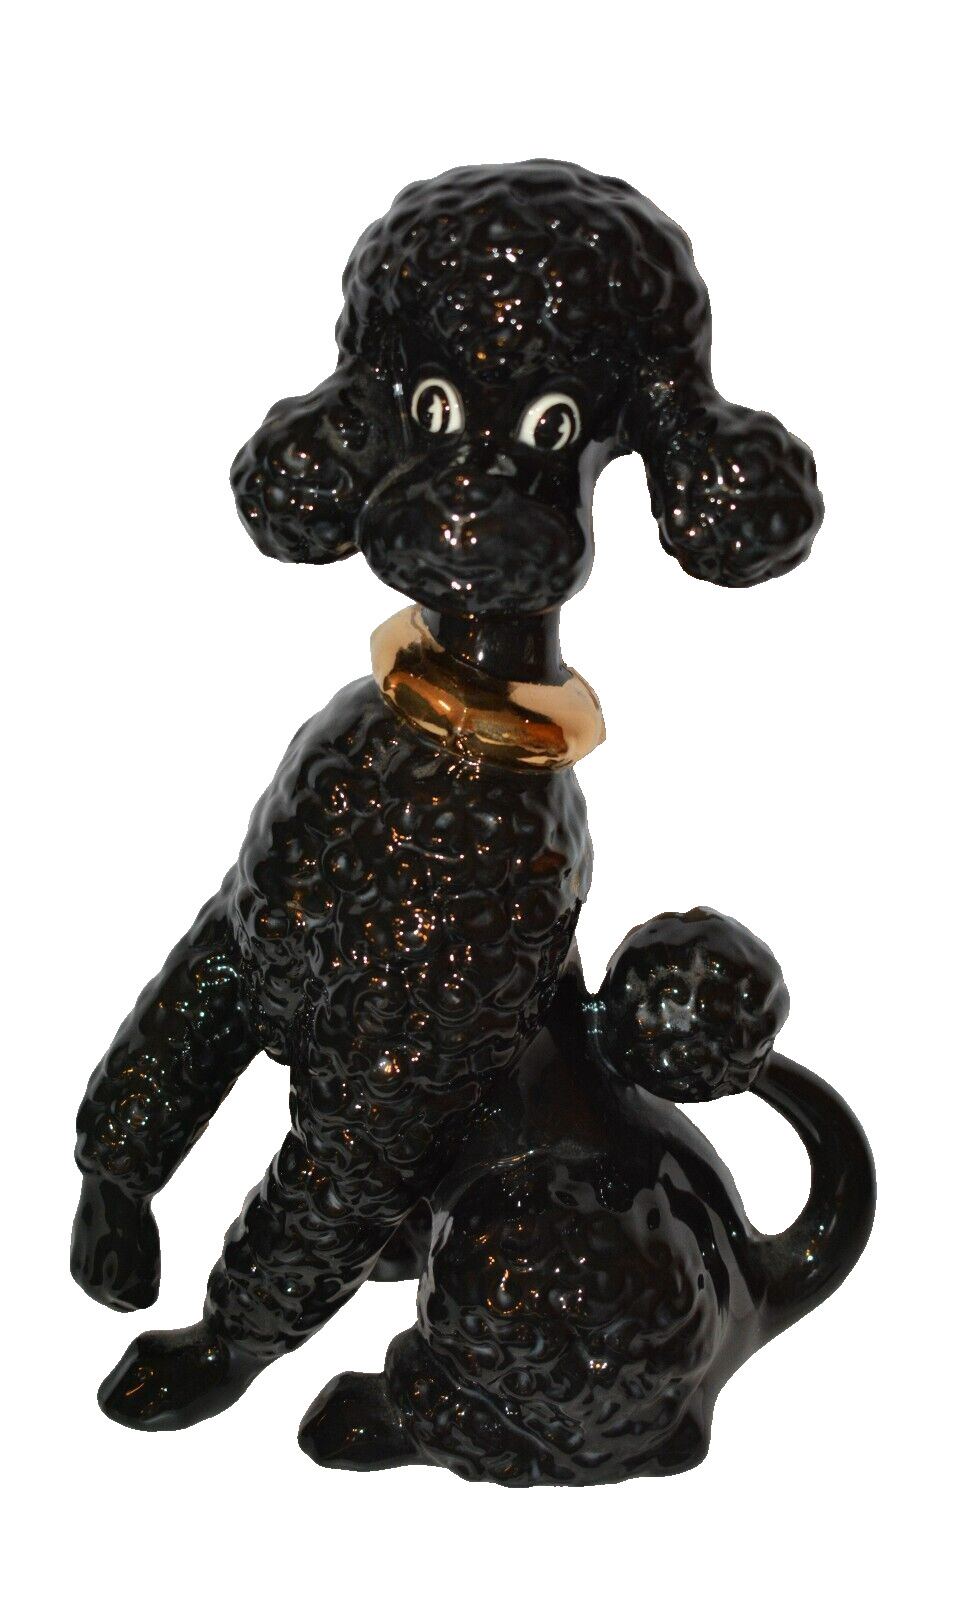 1963 Vintage Black Ceramic Poodle Dog Figurine 10\